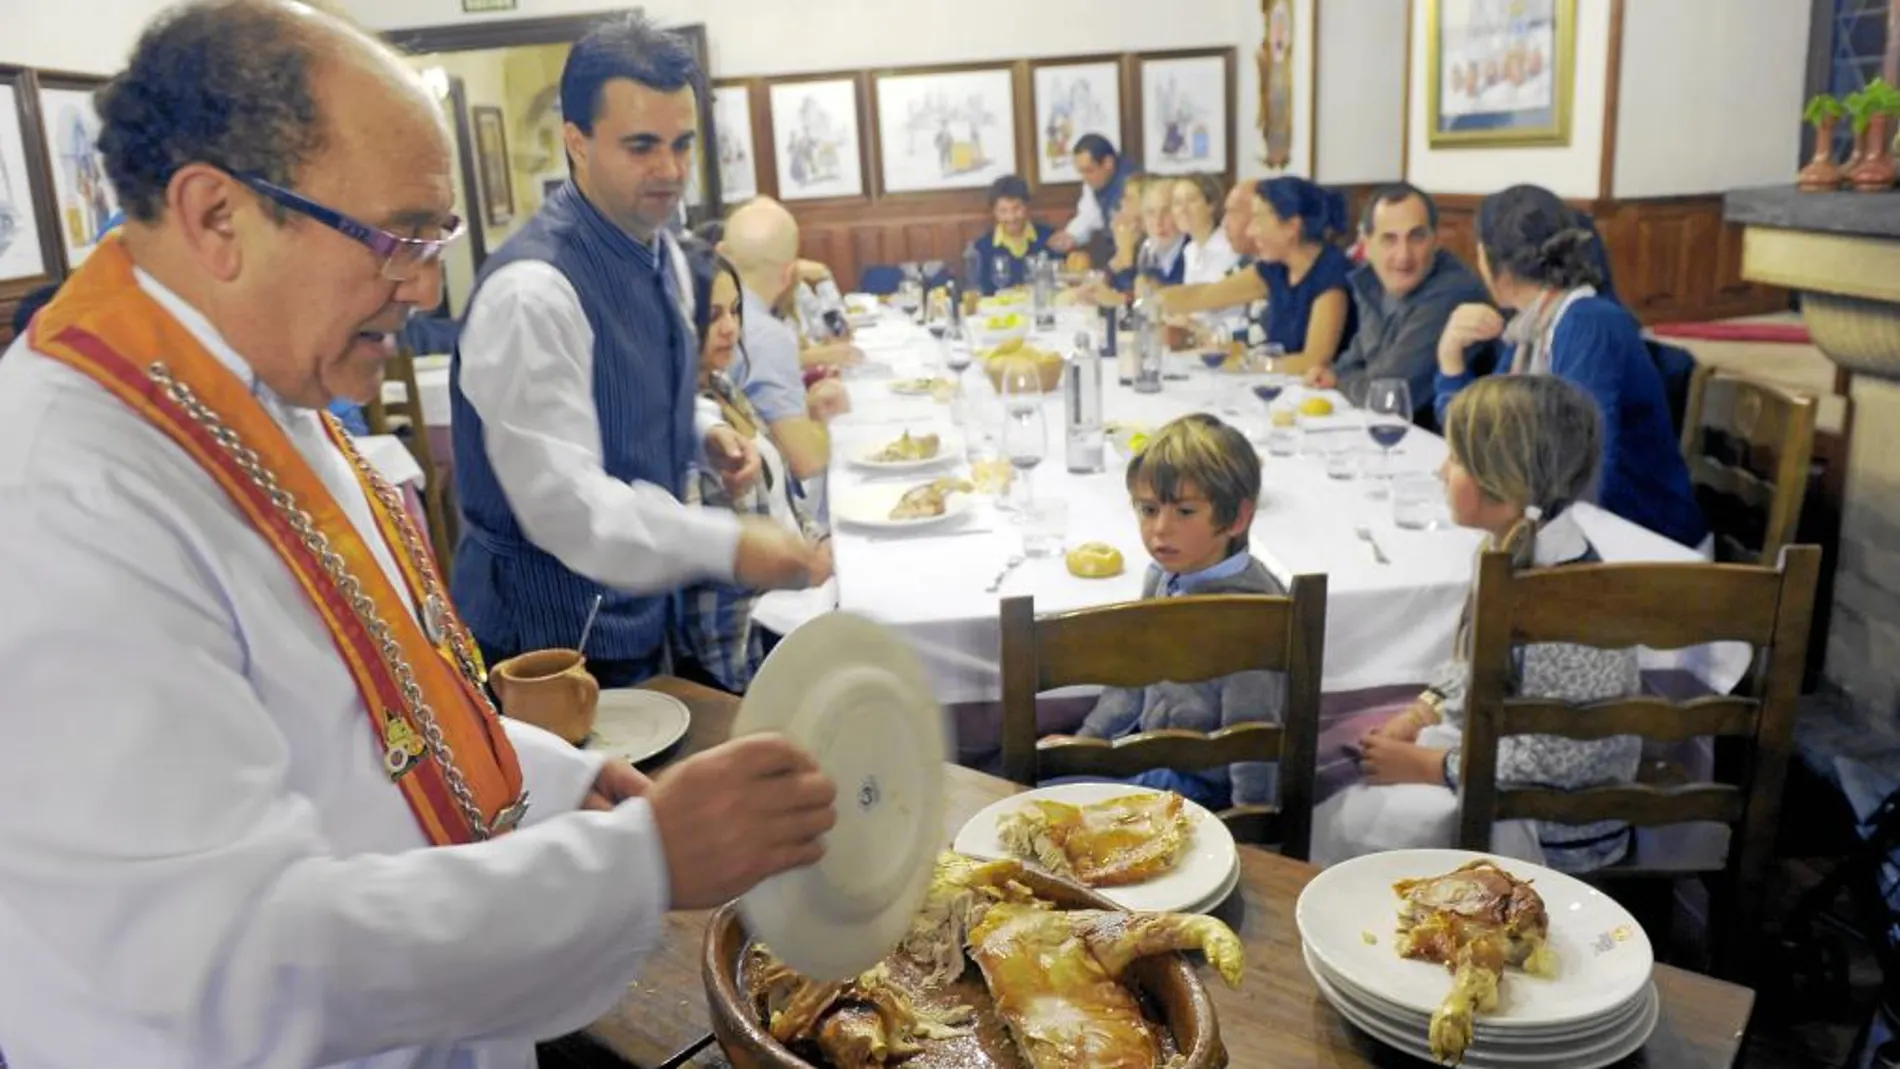 El prestigioso hostelero José María Ruiz trincha en su establecimiento el cochinillo segoviano al estilo tradicional